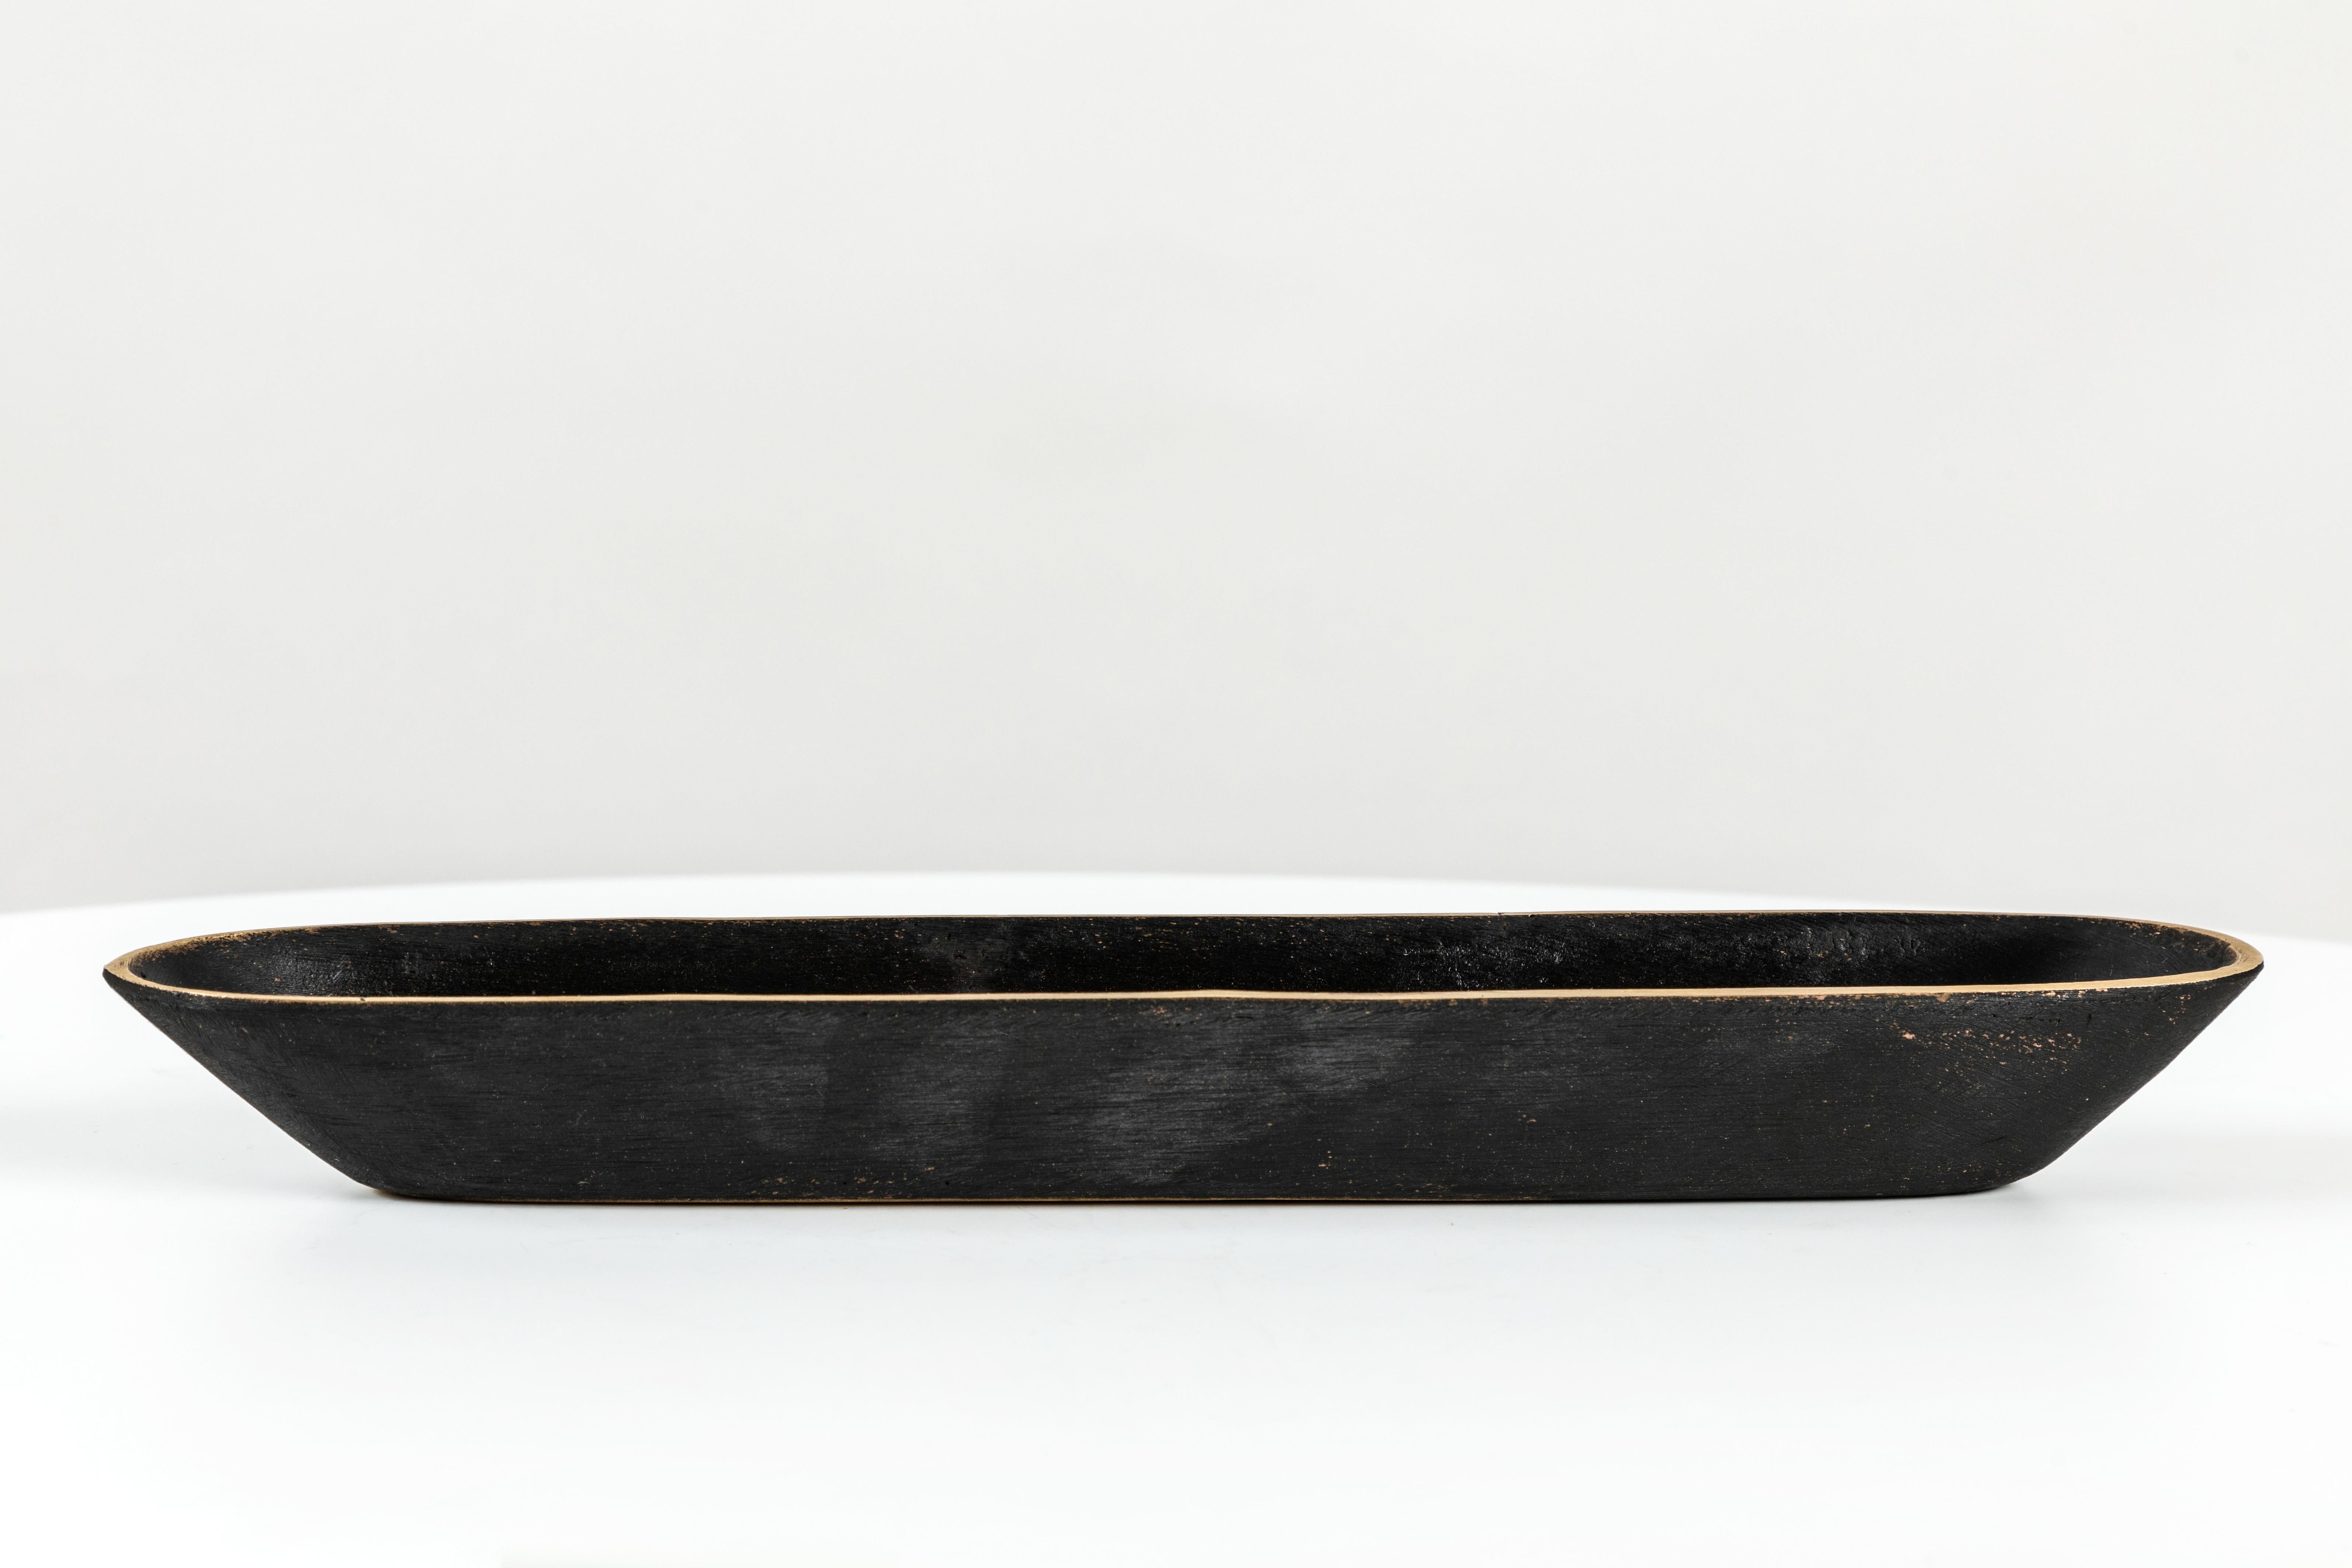 Carl Auböck Modell #4317 Messingschale. Diese unglaublich raffinierte und skulpturale Wiener Schale wurde in den 1950er-Jahren entworfen und ist aus poliertem und dunkel patiniertem Messing gefertigt. Ursprünglich als Füllfederhalter gedacht, lässt